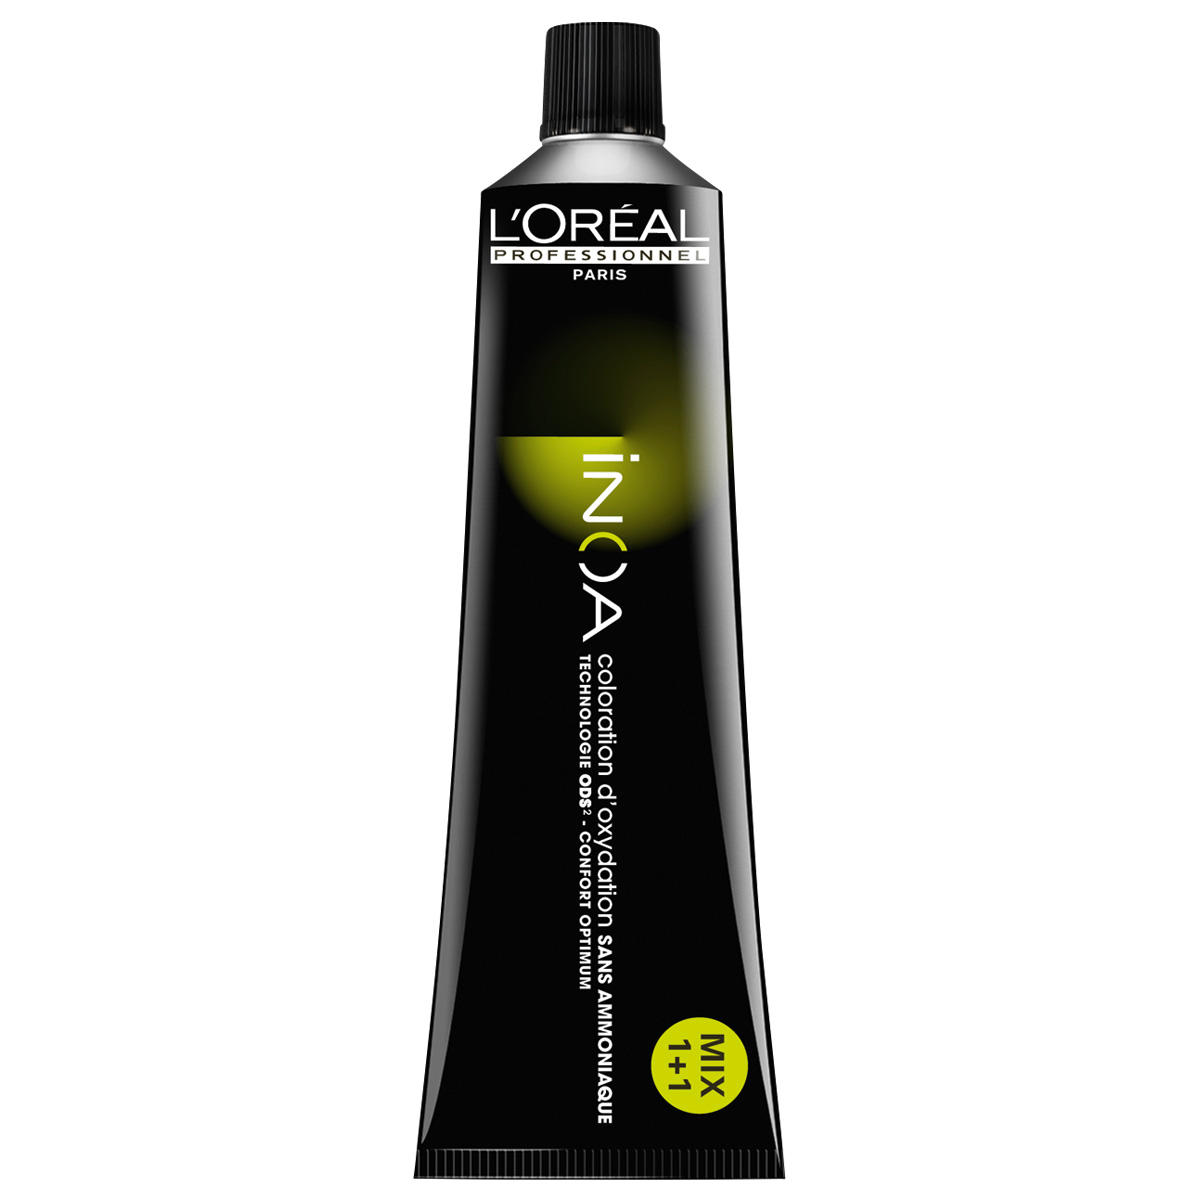 L'Oréal Professionnel Paris Coloration 9,0 blond très clair intense, Tube 60 ml